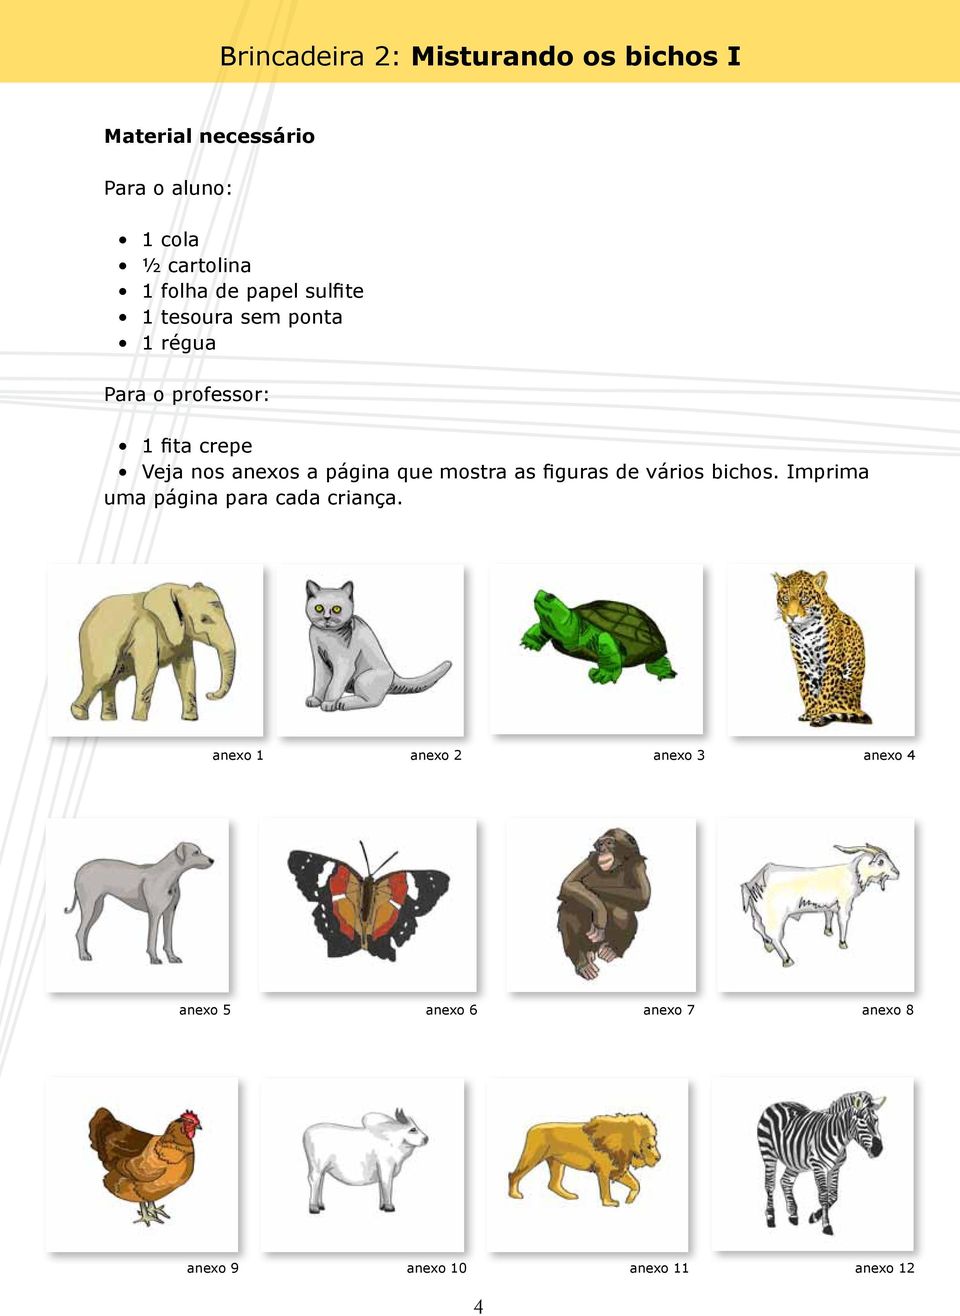 anexos a página que mostra as figuras de vários bichos. Imprima uma página para cada criança.